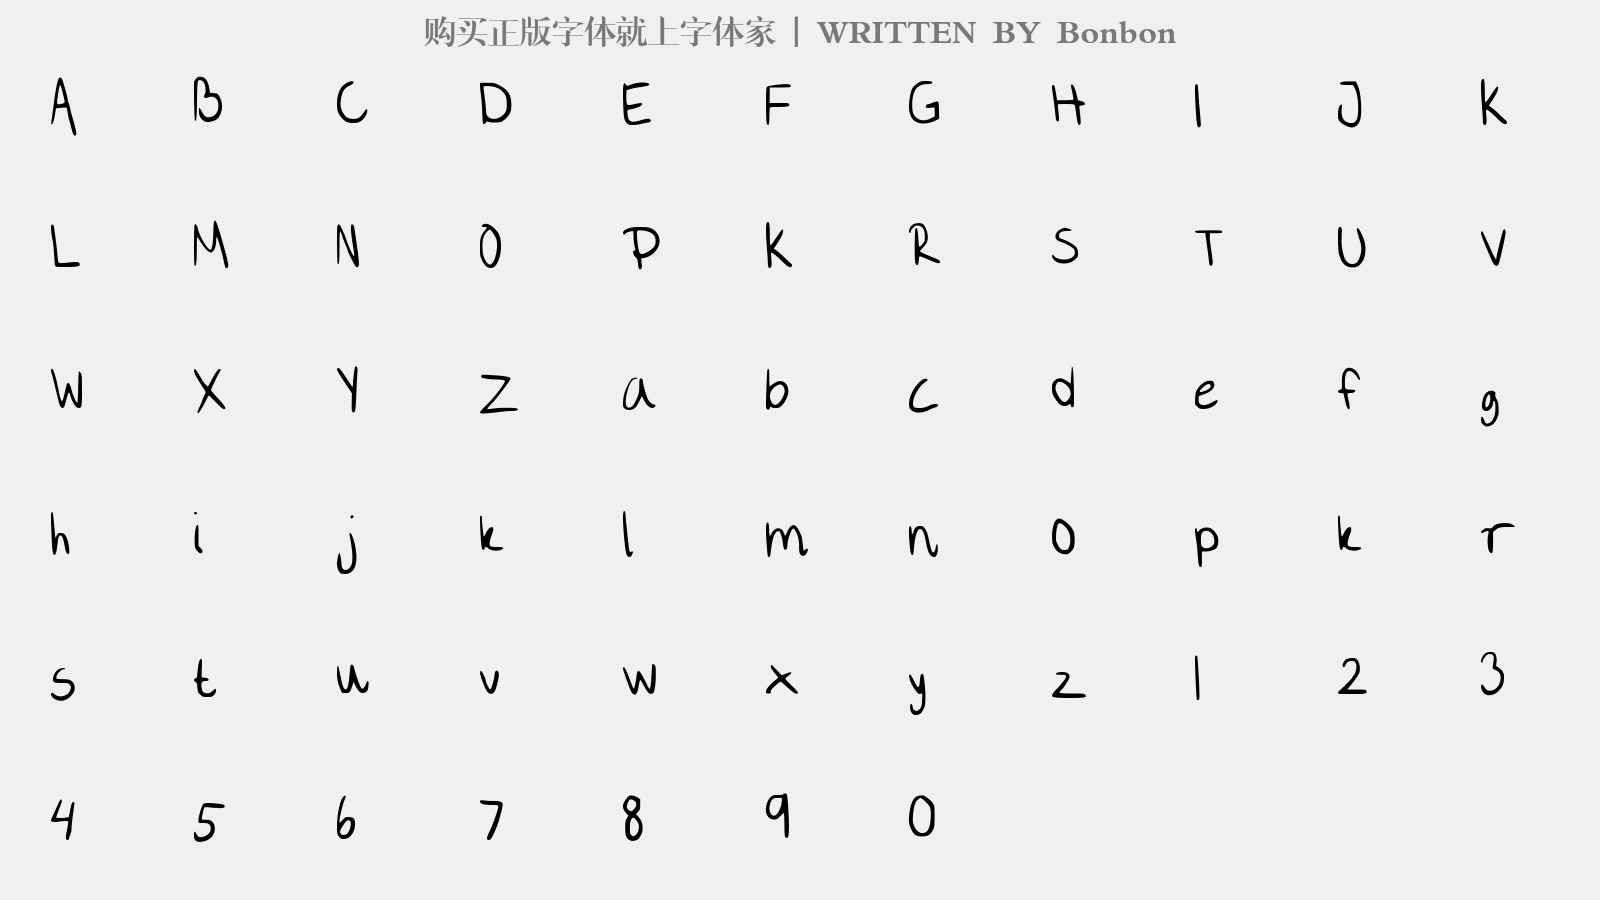 Bonbon - 大写字母/小写字母/数字